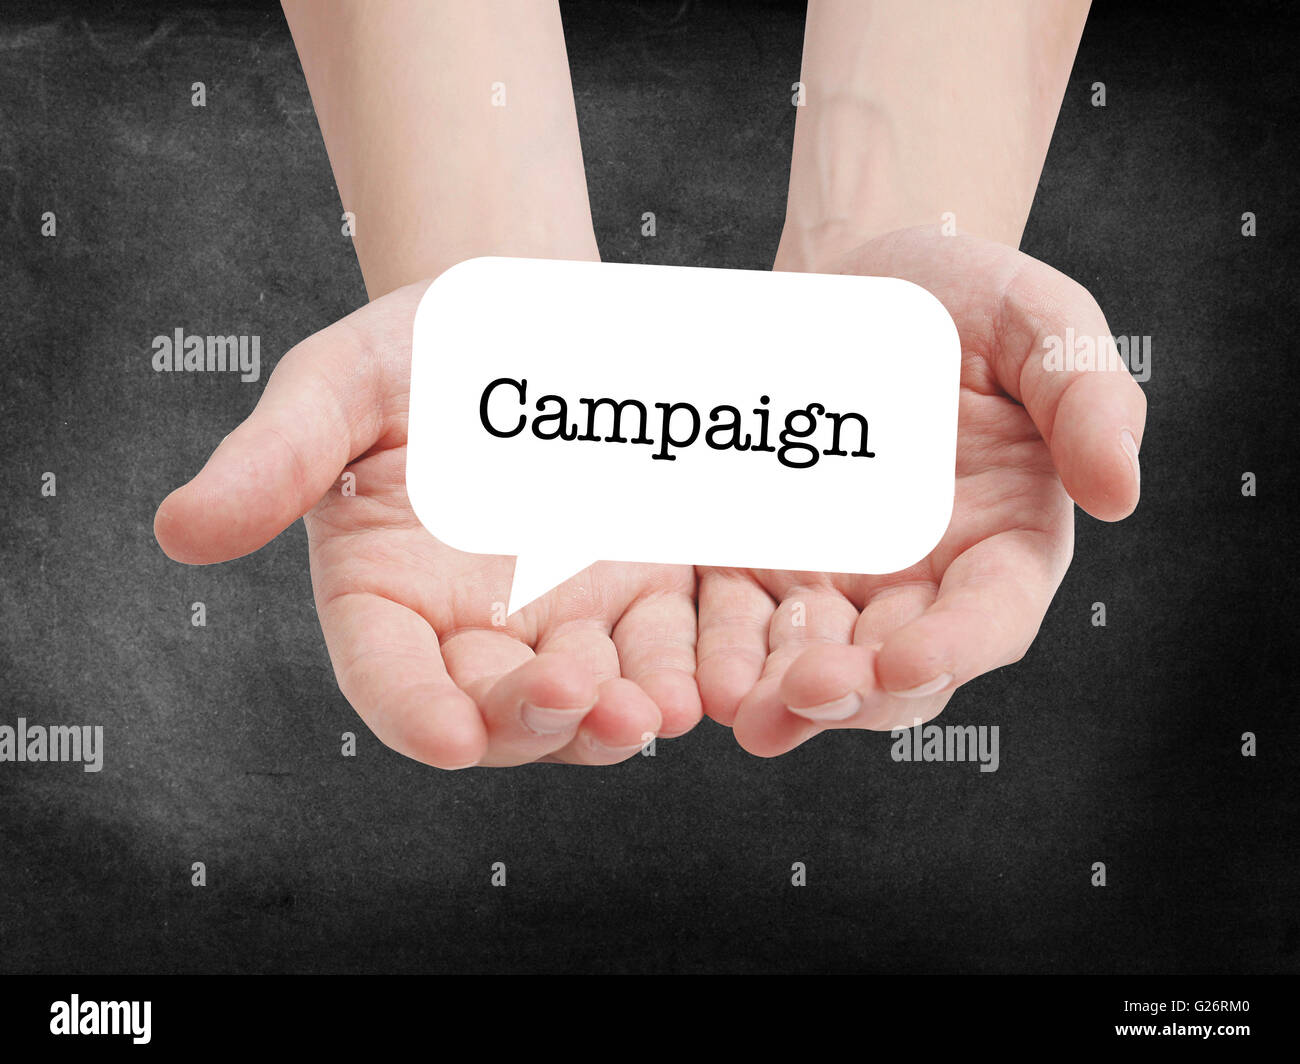 Campagna scritto su un speechbubble Foto Stock